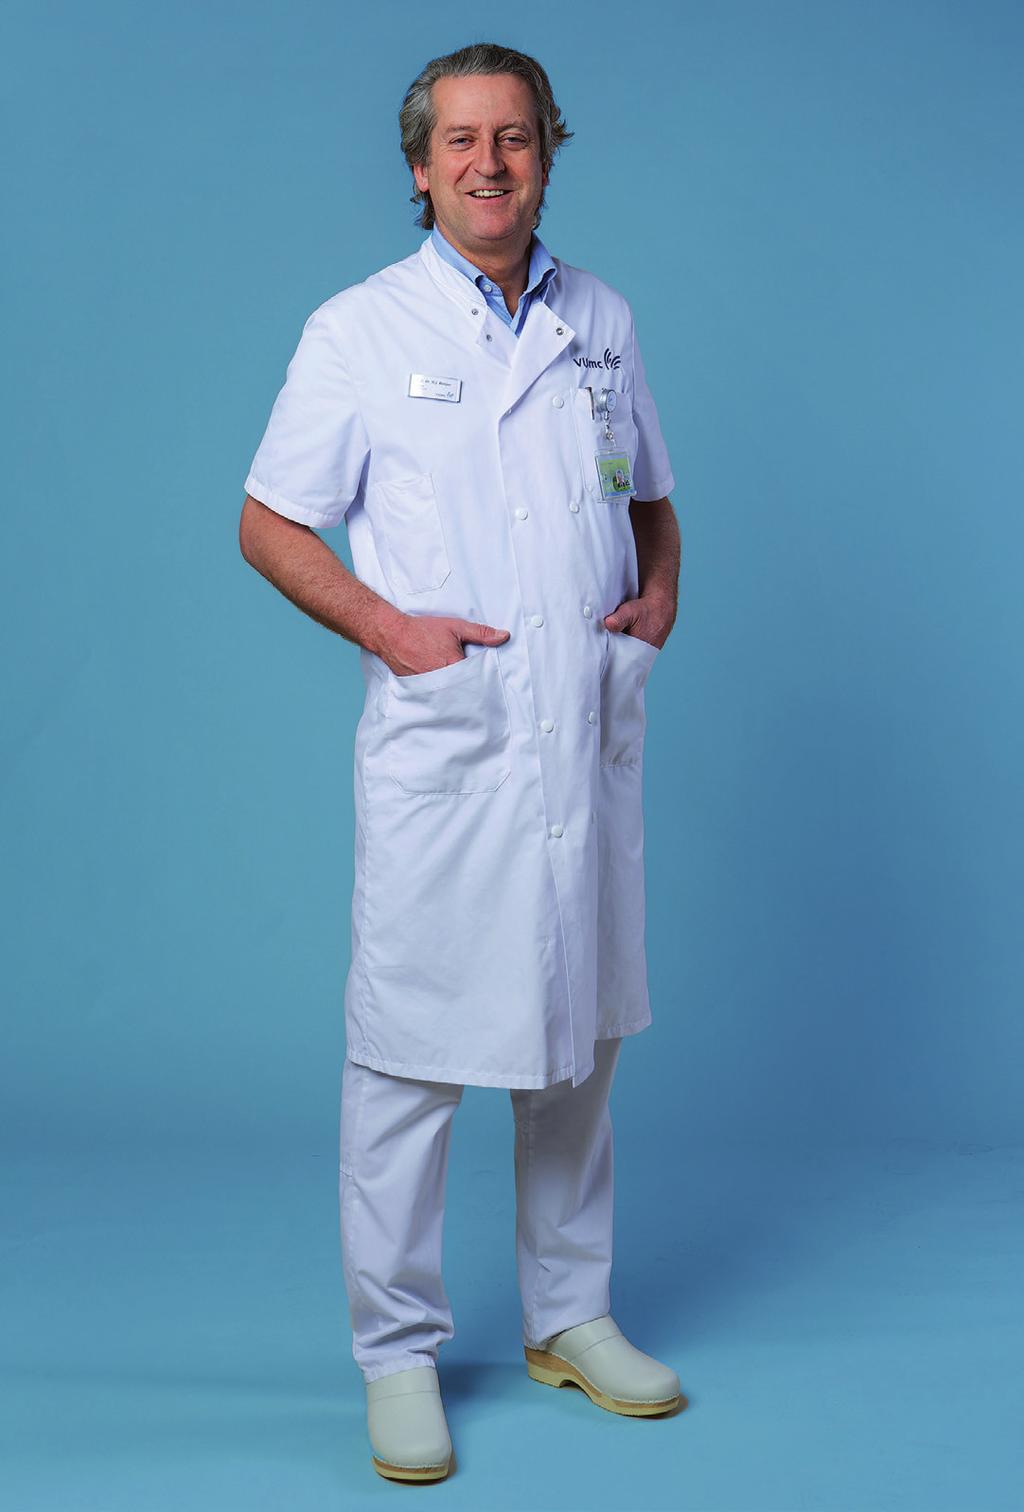 5.3 Witte broek bij artsenjas met korte mouw Bij werkzaamheden waarbij risico is op spatten, wordt